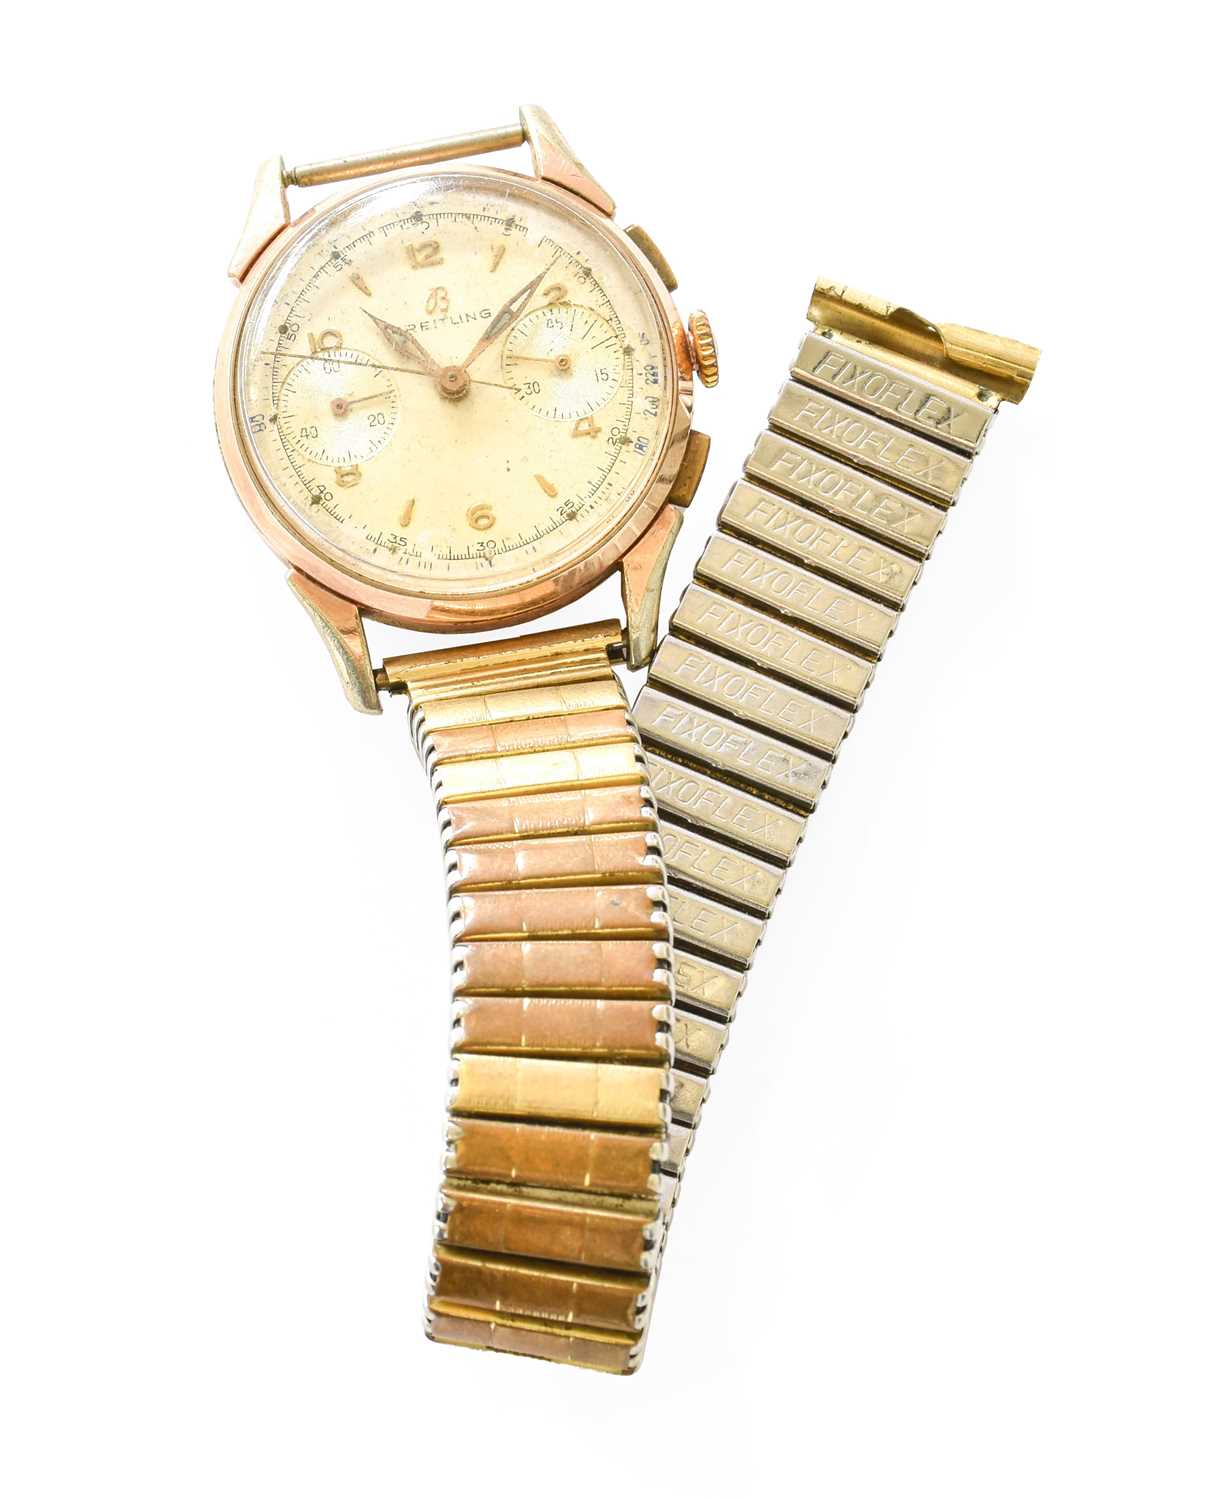 A Gold Plated Chronograph Wristwatch, signed Breitling, circa 1950, (calibre Venus 188) lever